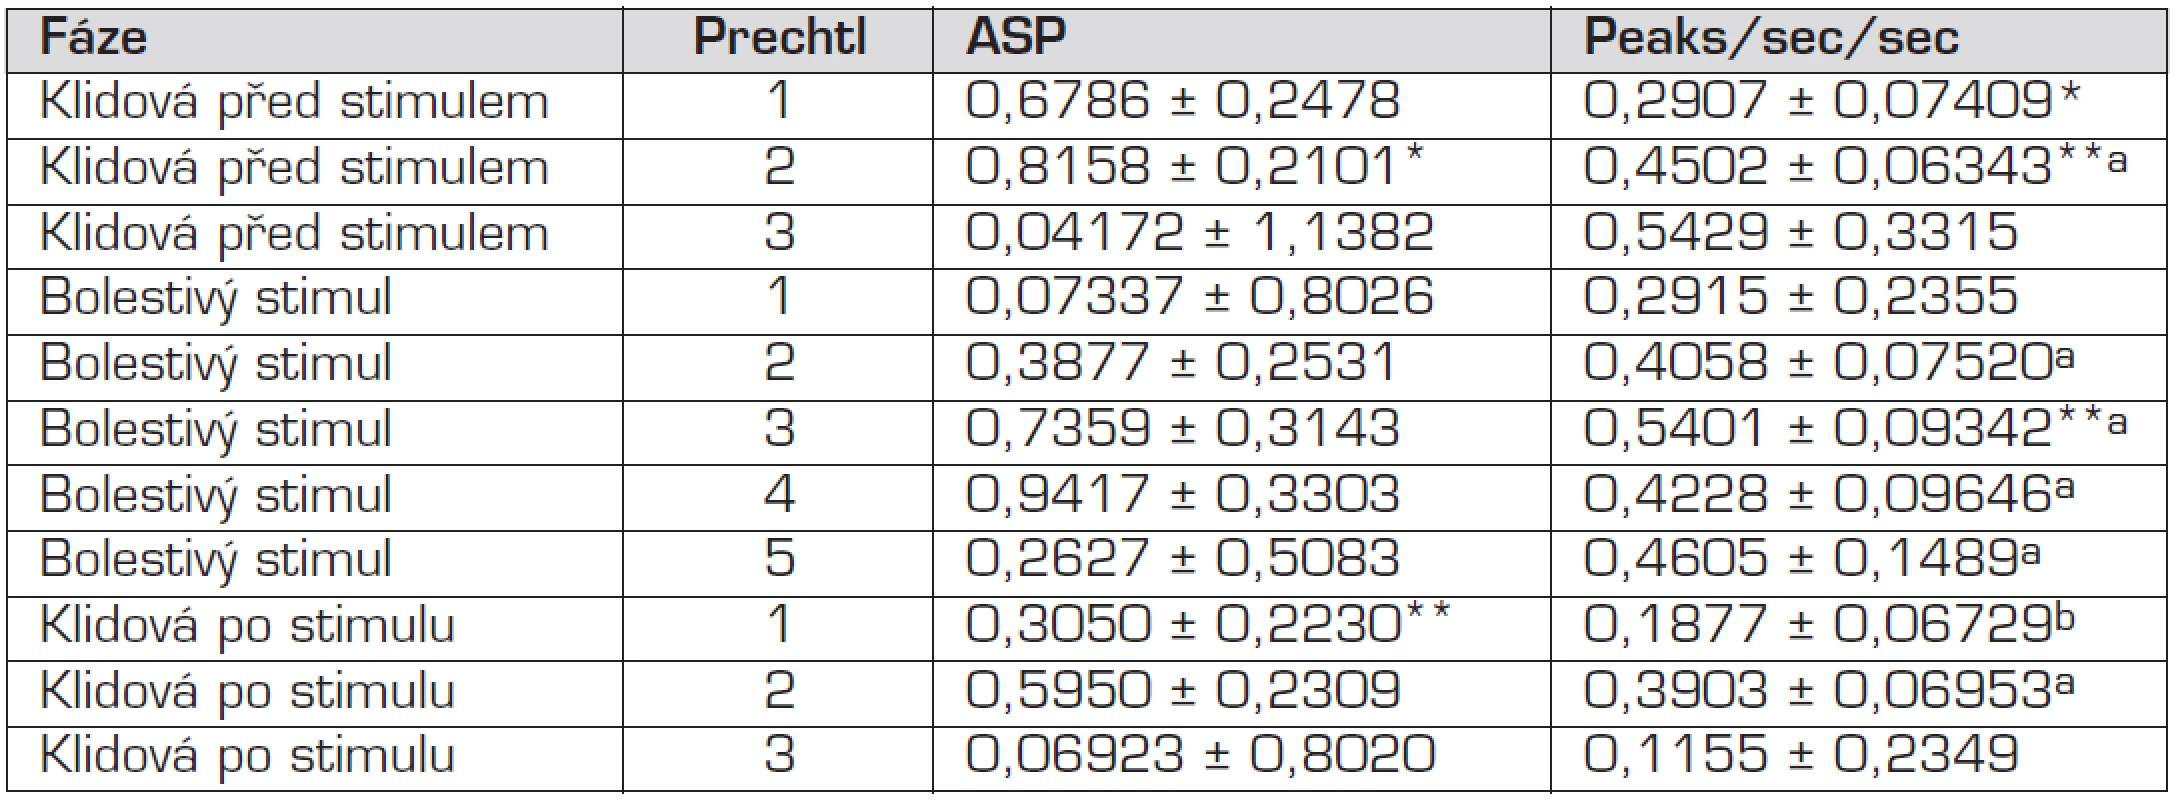 LSM ± SD parametrů ASP a Peaks/sec/sec podle fáze a stupně podle Prechtla.